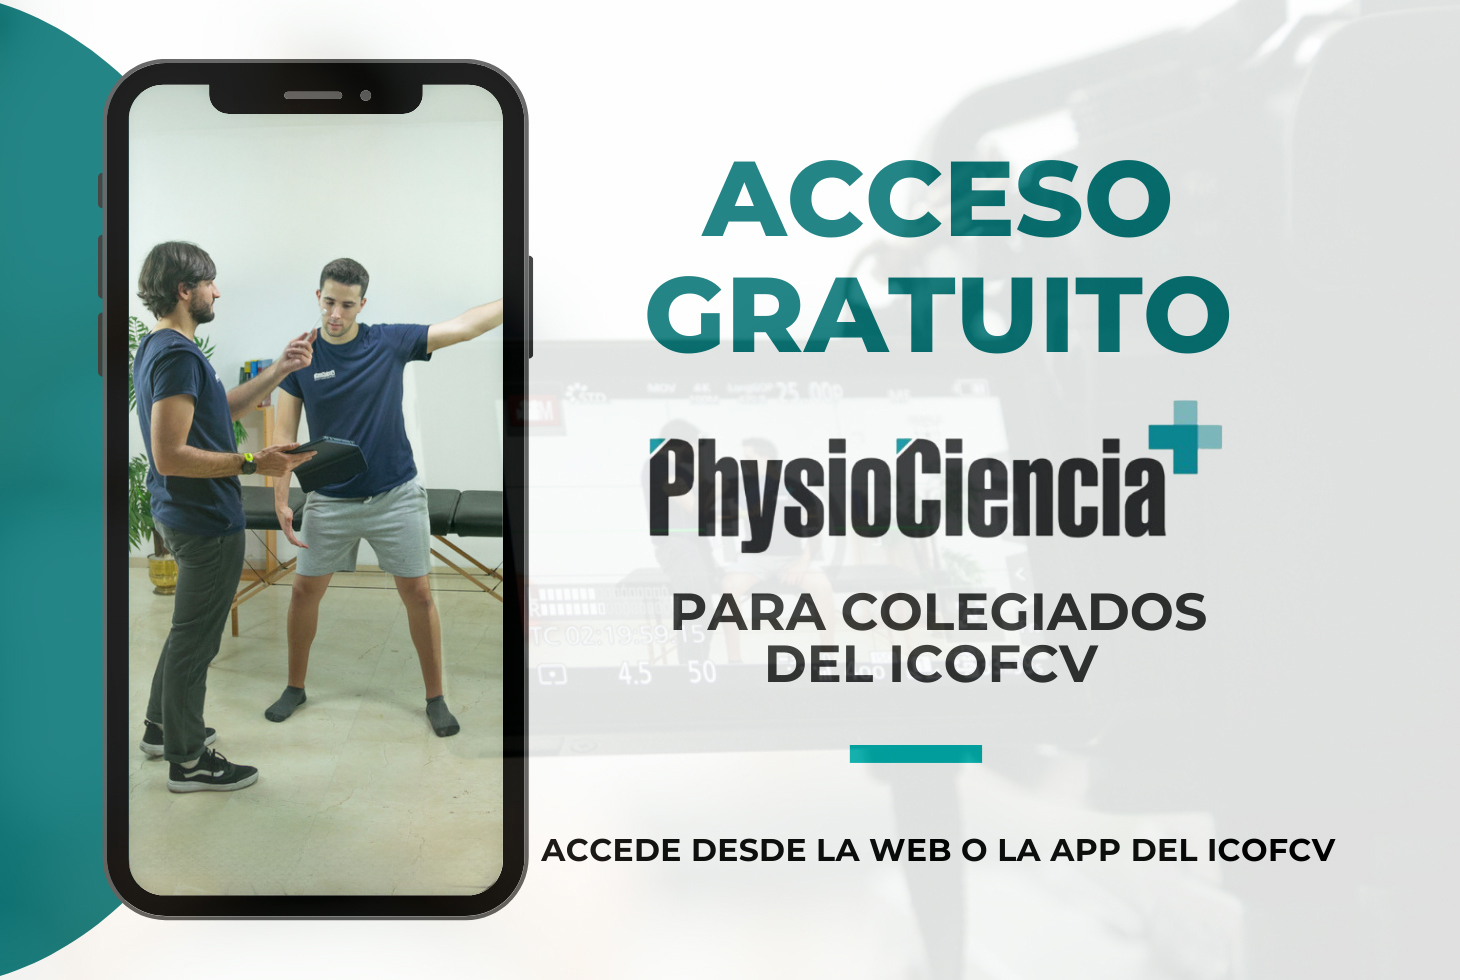 Los colegiados del ICOFCV ya podéis disfrutar de acceso gratuito a la plataforma Physiociencia + 